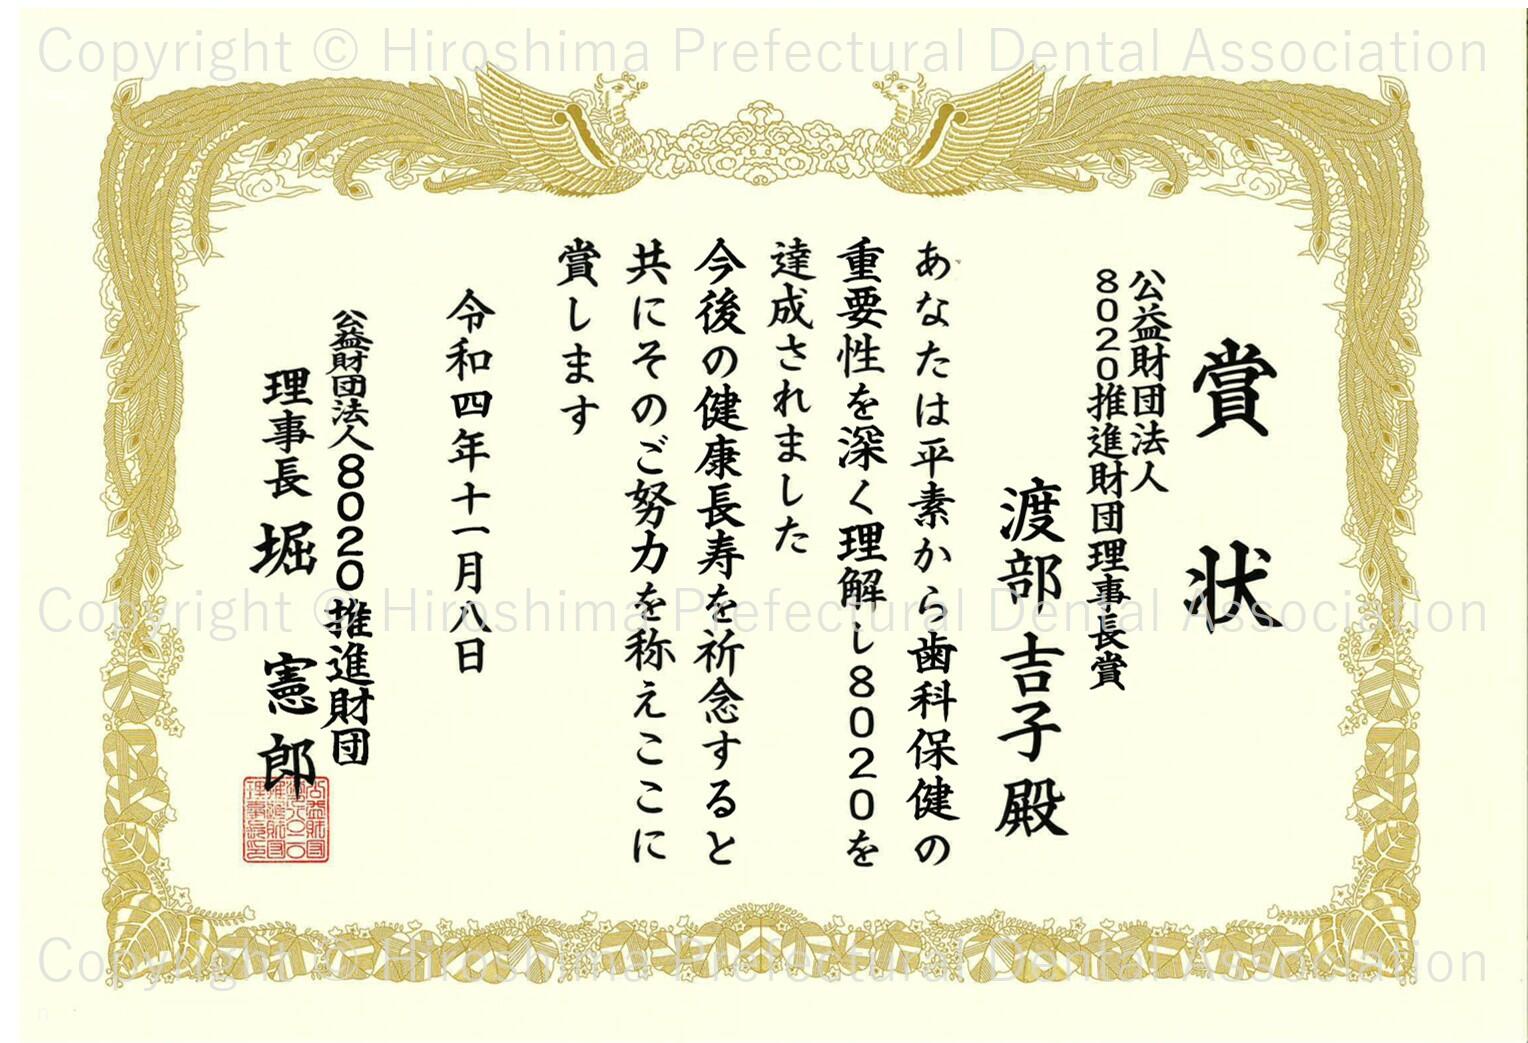 certificate_08